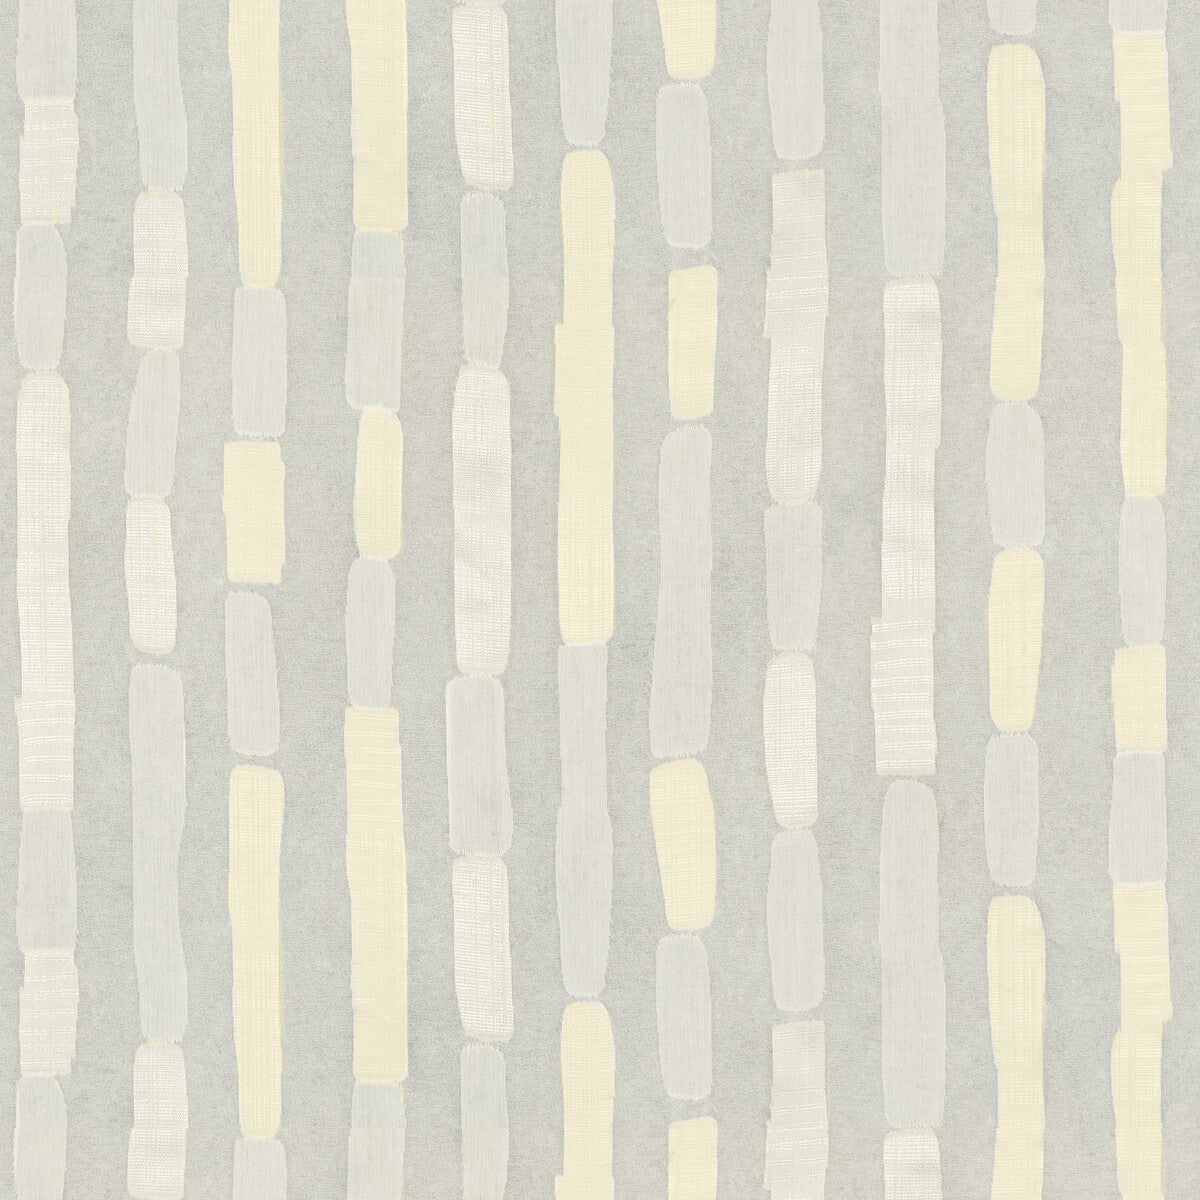 Kravet Basics fabric in 4501-1 color - pattern 4501.1.0 - by Kravet Basics